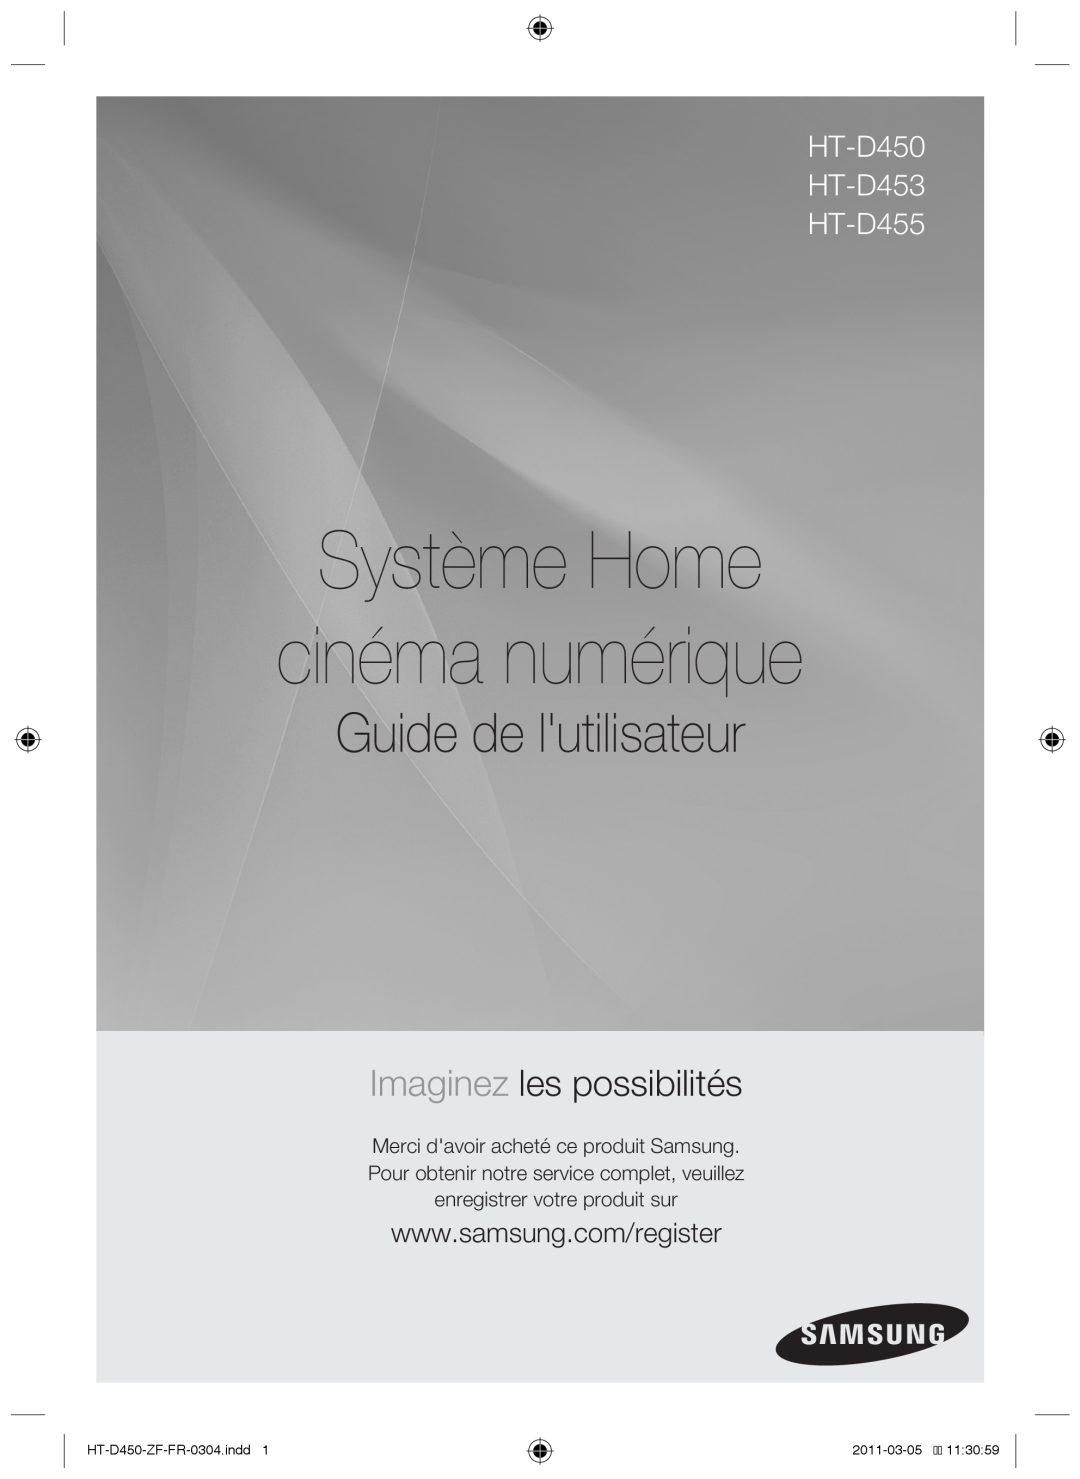 Samsung Système Home cinéma numérique, Guide de lutilisateur, Imaginez les possibilités, HT-D450 HT-D453 HT-D455 